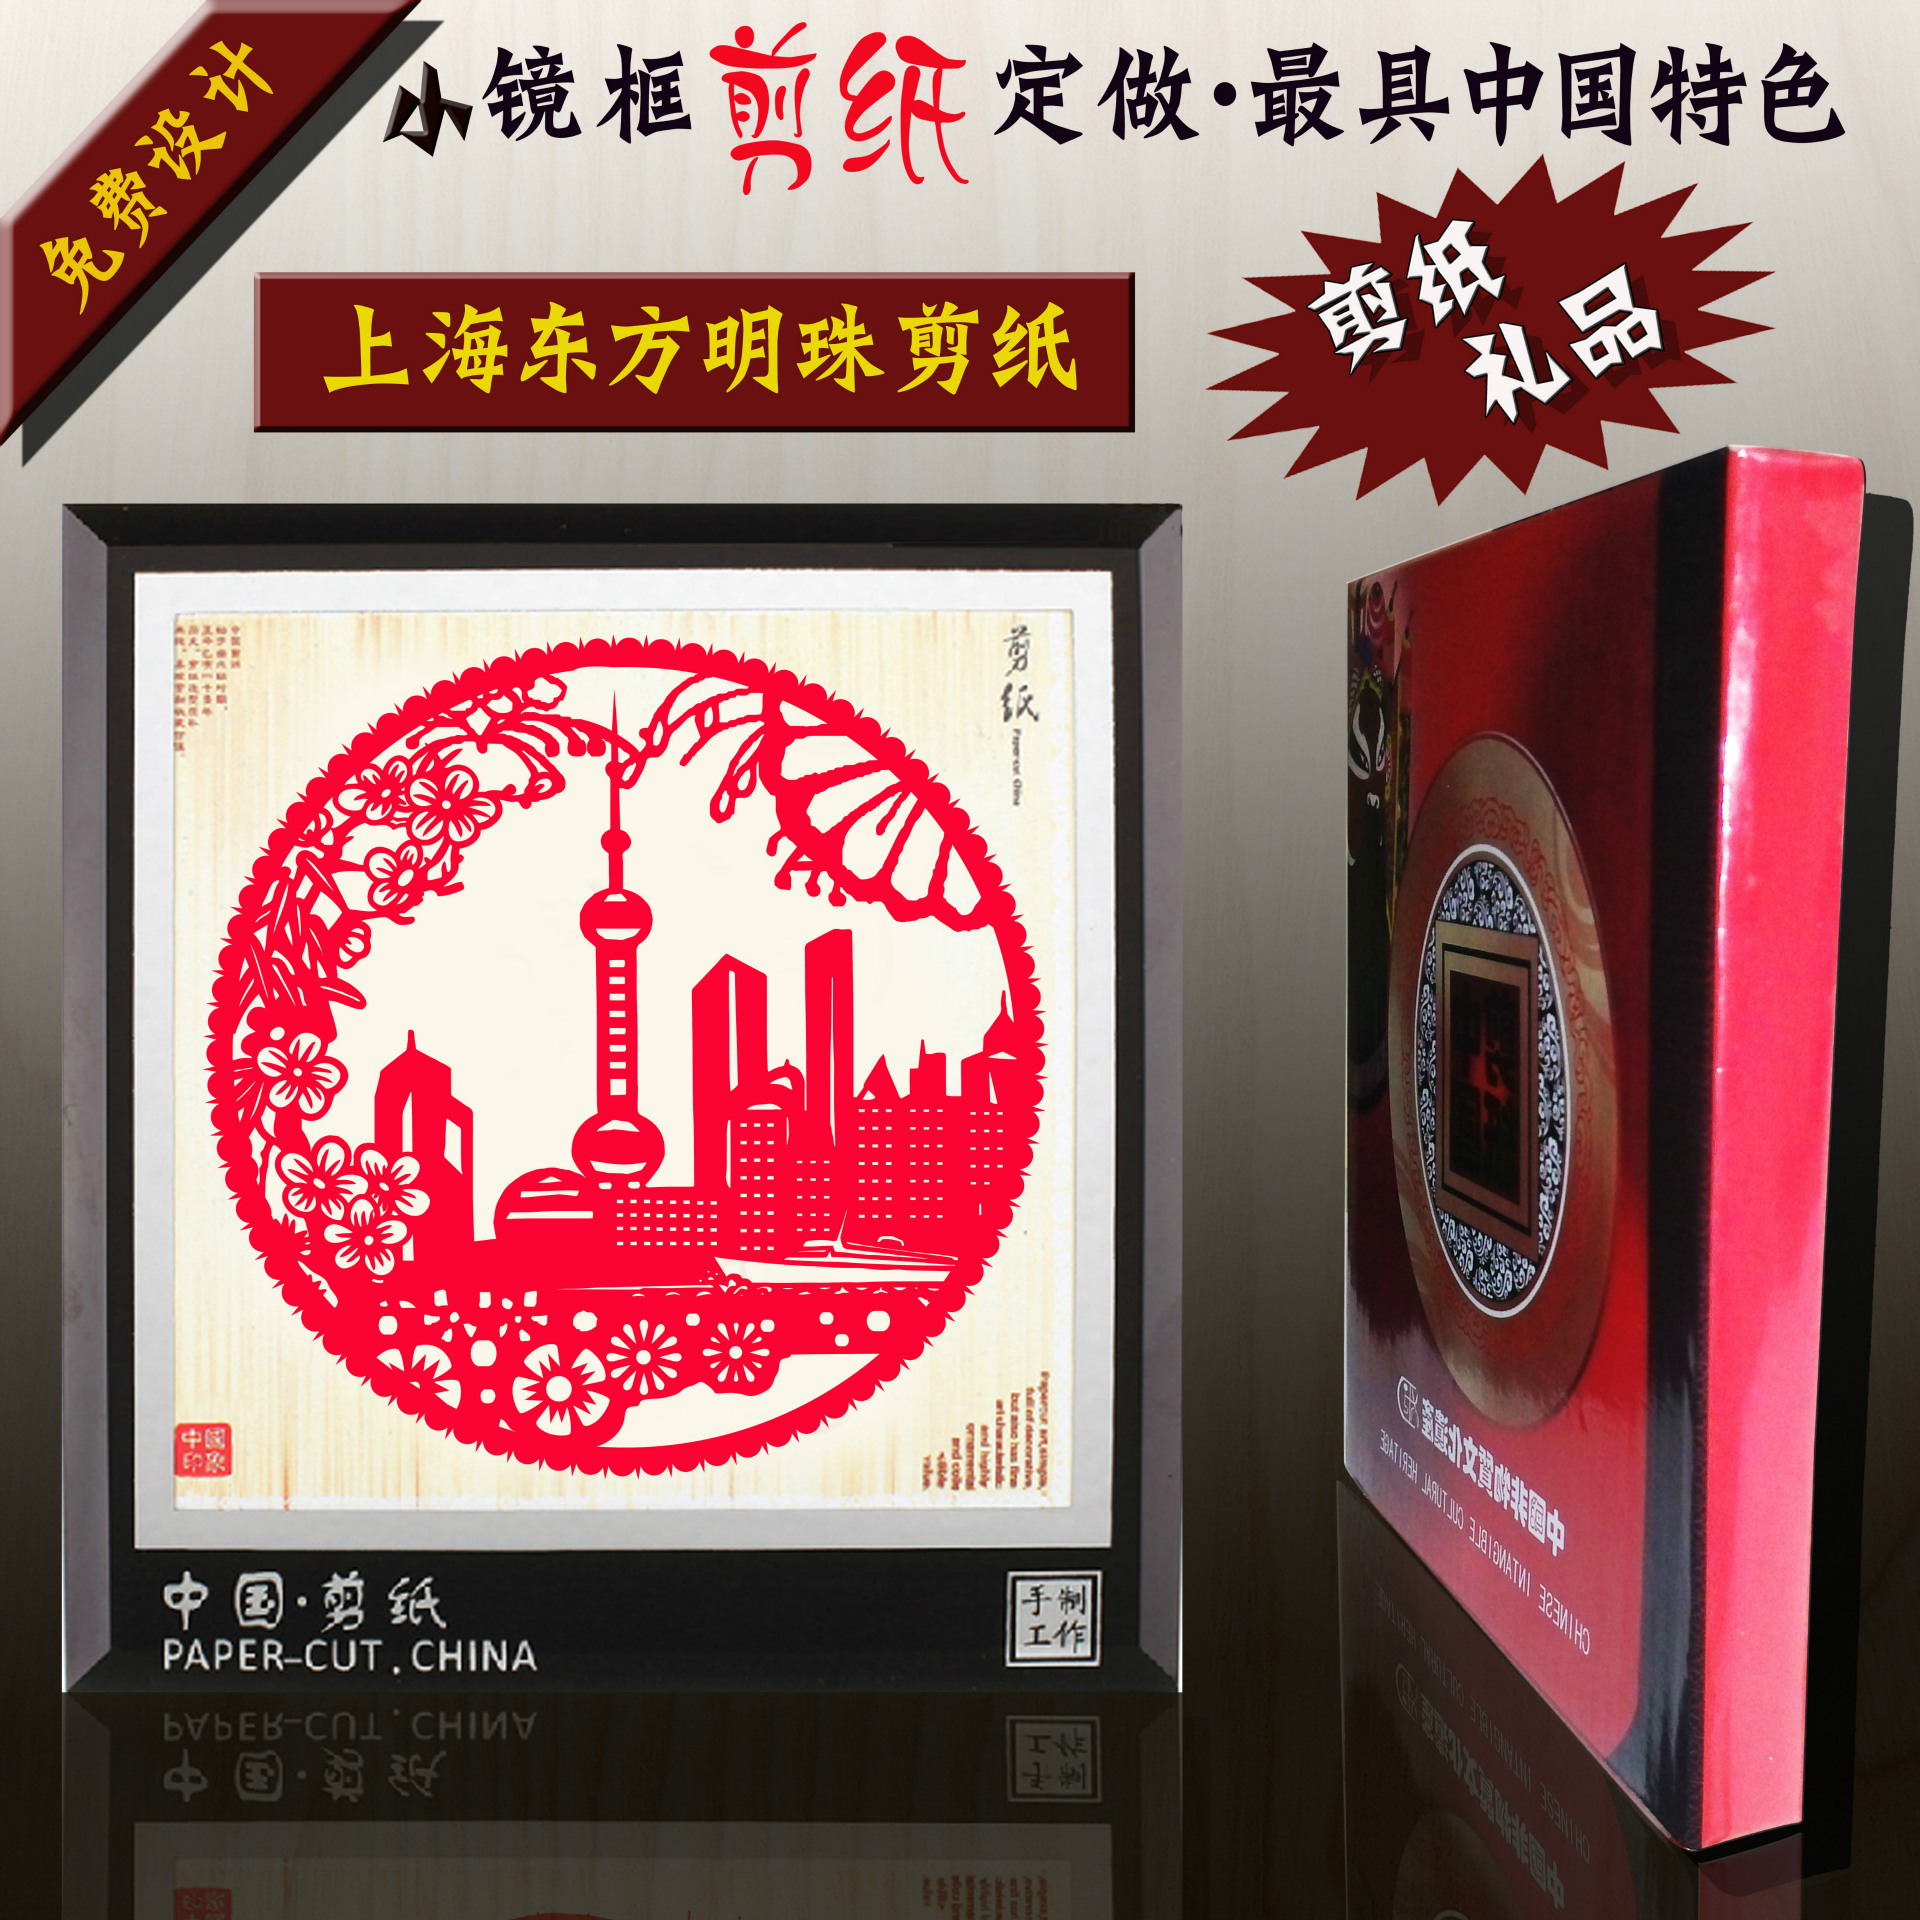 上海东方明珠剪纸 小镜框剪纸礼品定制 中国特色纪念品 出国礼品